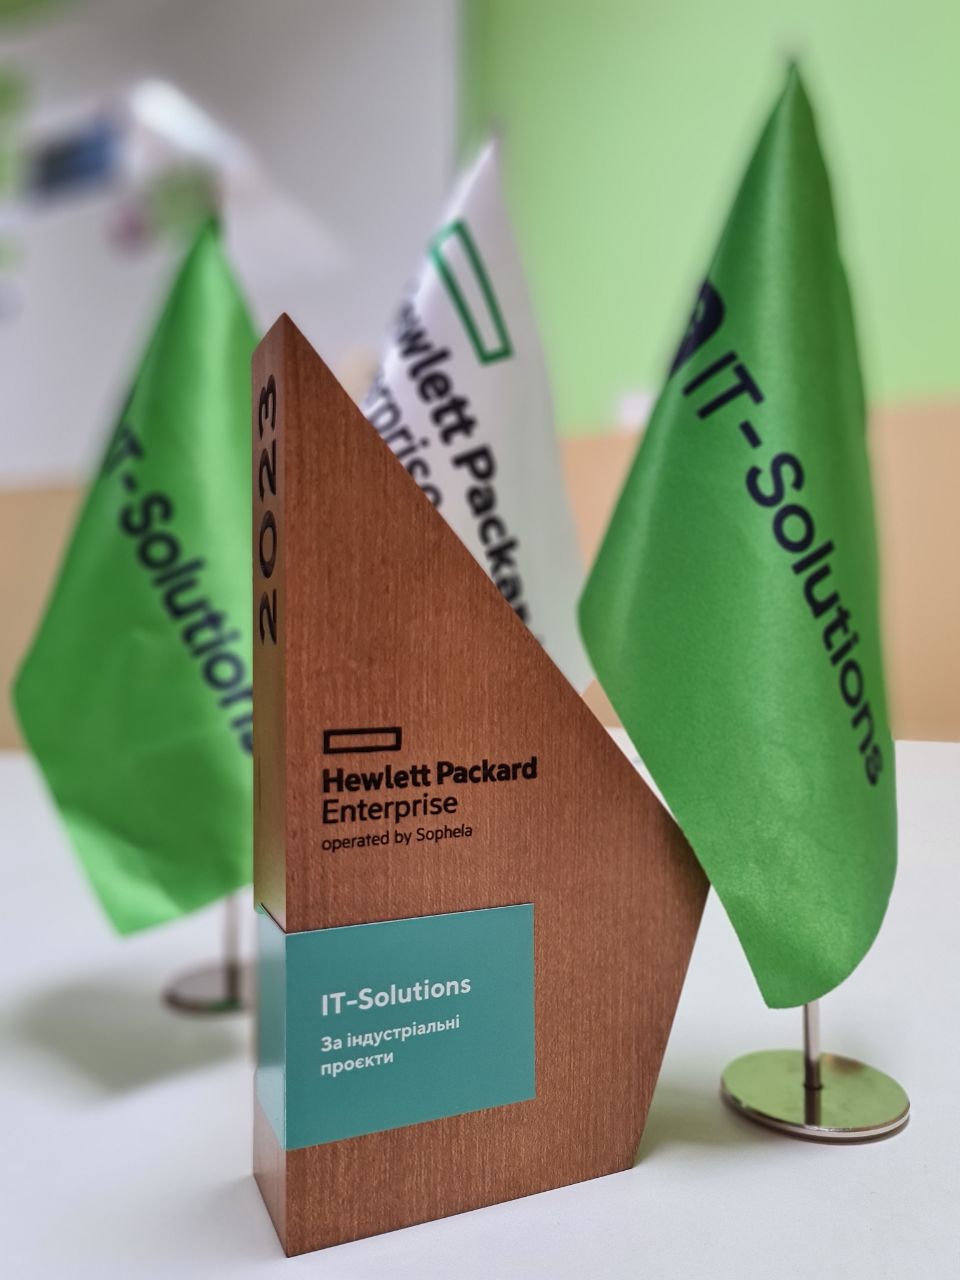 IT-Solutions отримала почесну нагороду від HPE